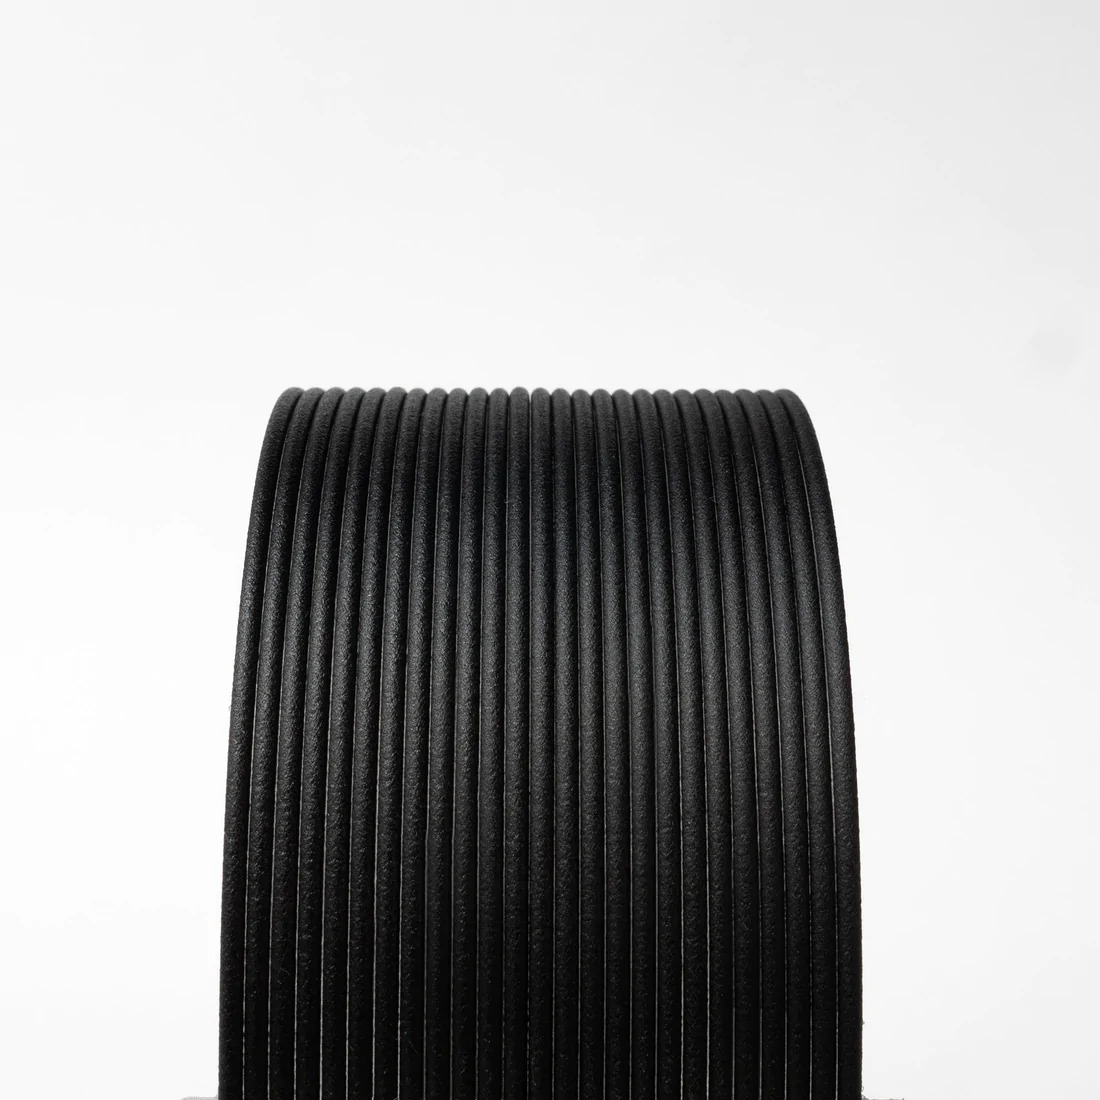 High Temp Carbon Fibre PLA  Black V2.0  2.85mm